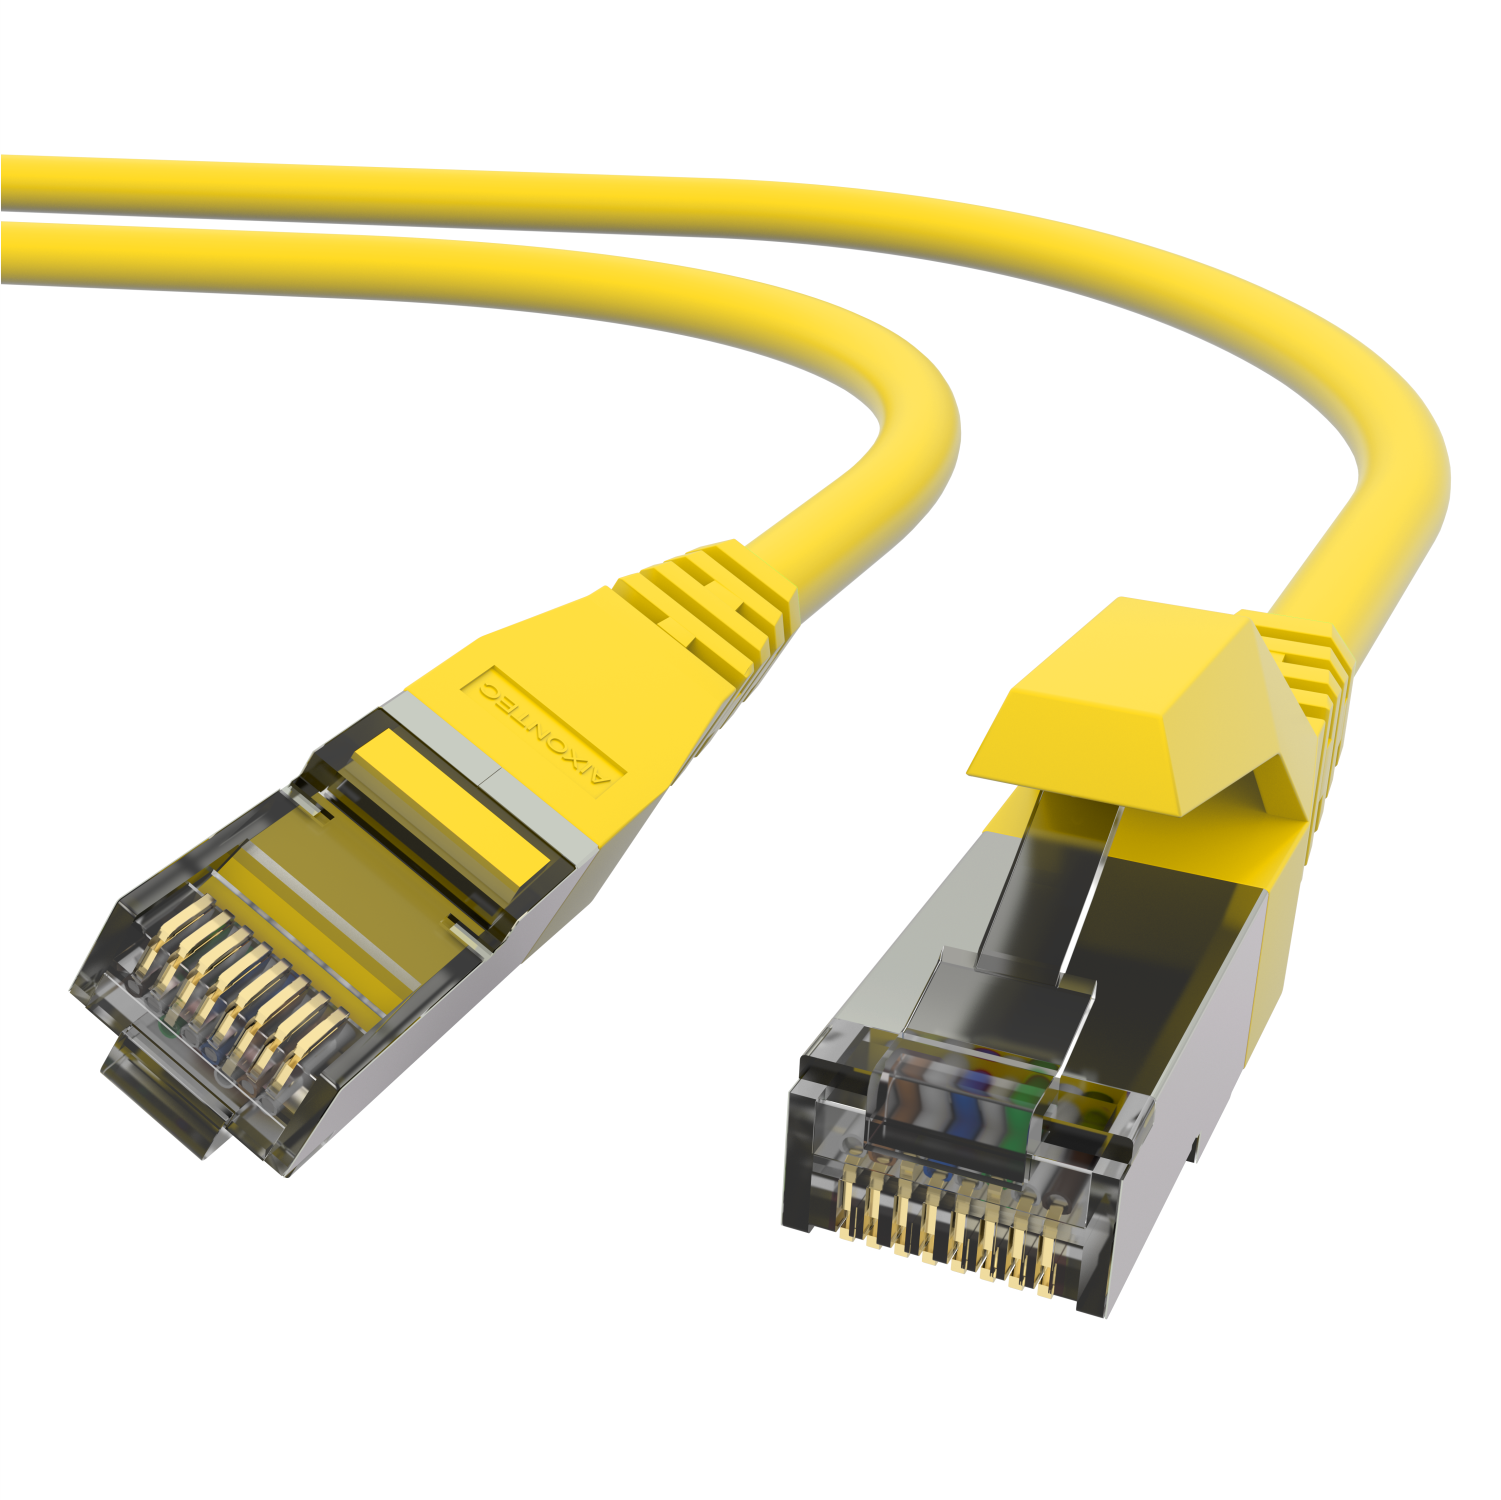 10,0 Ethernetkabel Cat.6 10m Lankabel AIXONTEC Patchkabel m Gigabit, Netzwerkkabel, RJ45 10